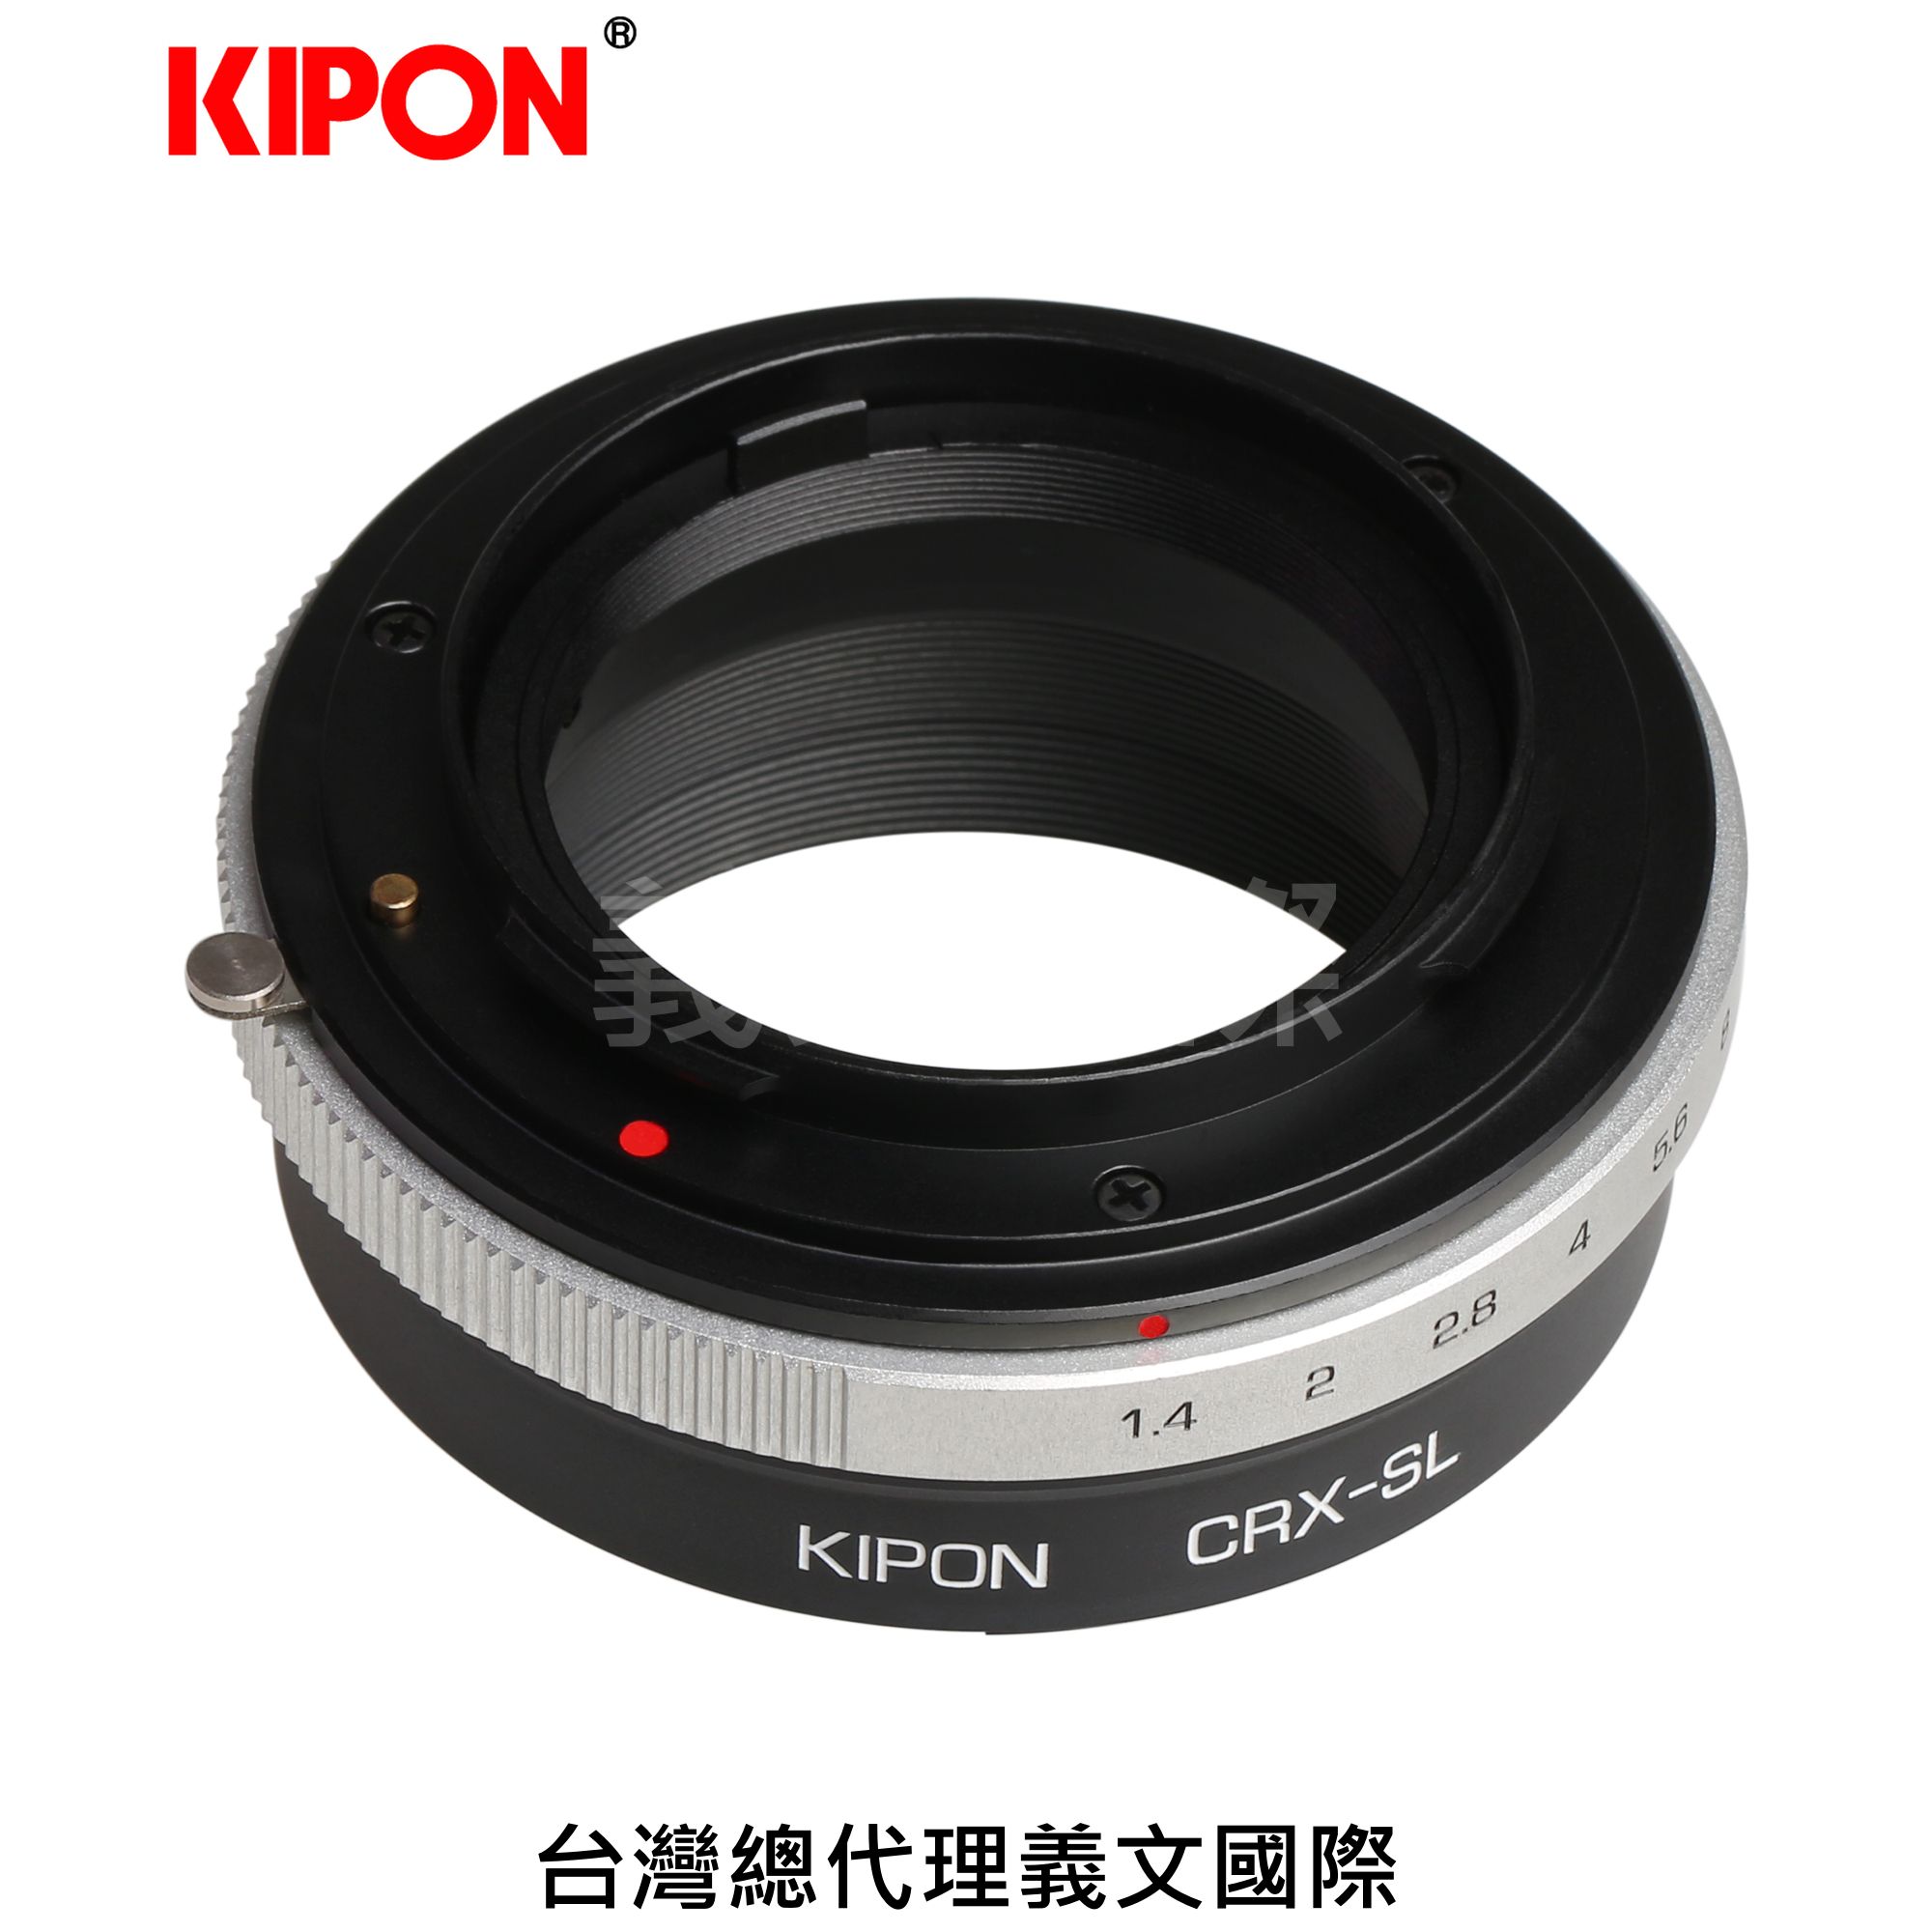 Kipon轉接環專賣店:CONTAREX-L(Leica SL,徠卡,CRX,S1,S1R,S1H,TL,TL2,SIGMA FP)